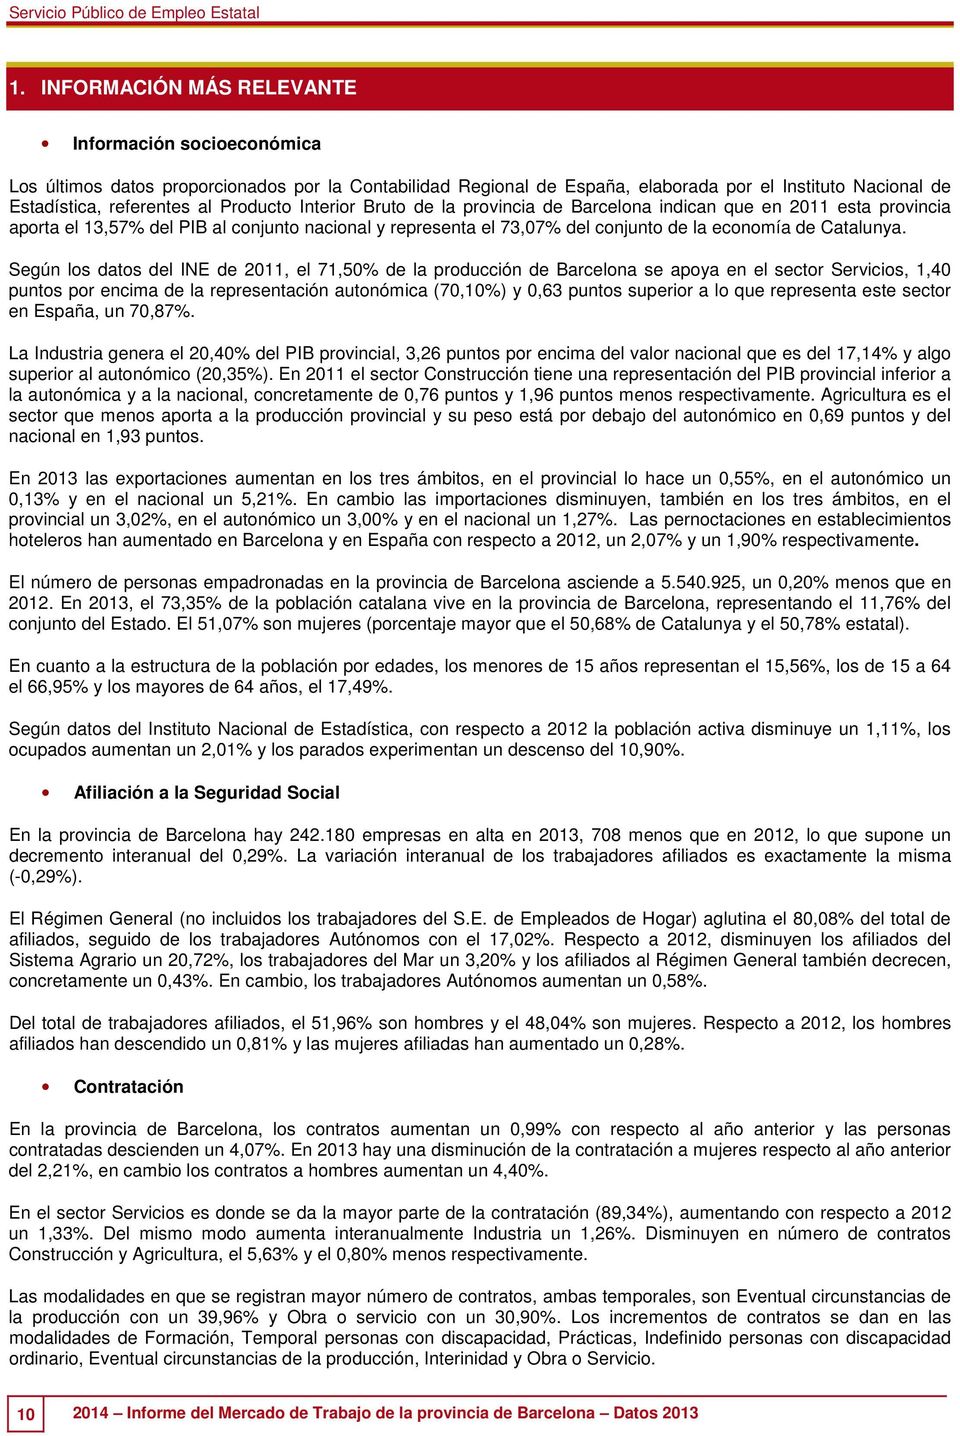 Según los datos del INE de 2011, el 71,50% de la producción de Barcelona se apoya en el sector Servicios, 1,40 puntos por encima de la representación autonómica (70,10%) y 0,63 puntos superior a lo